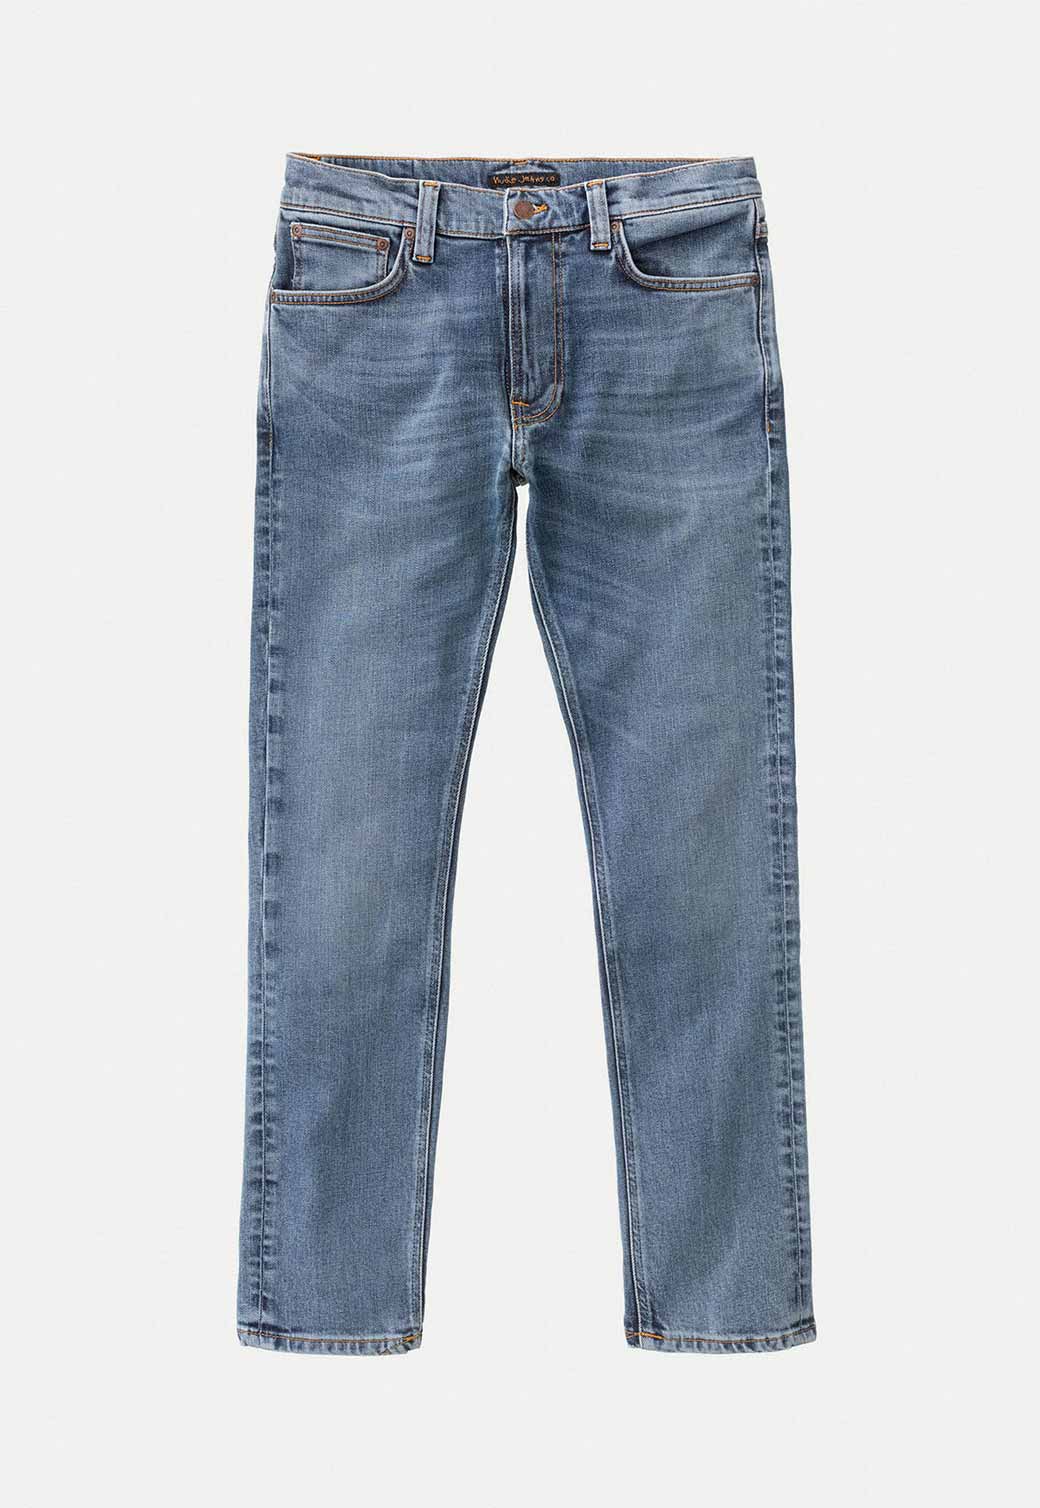 Lavender ג'ינס ארוך לגברים Lean Dean - Lost Orange NUDIE